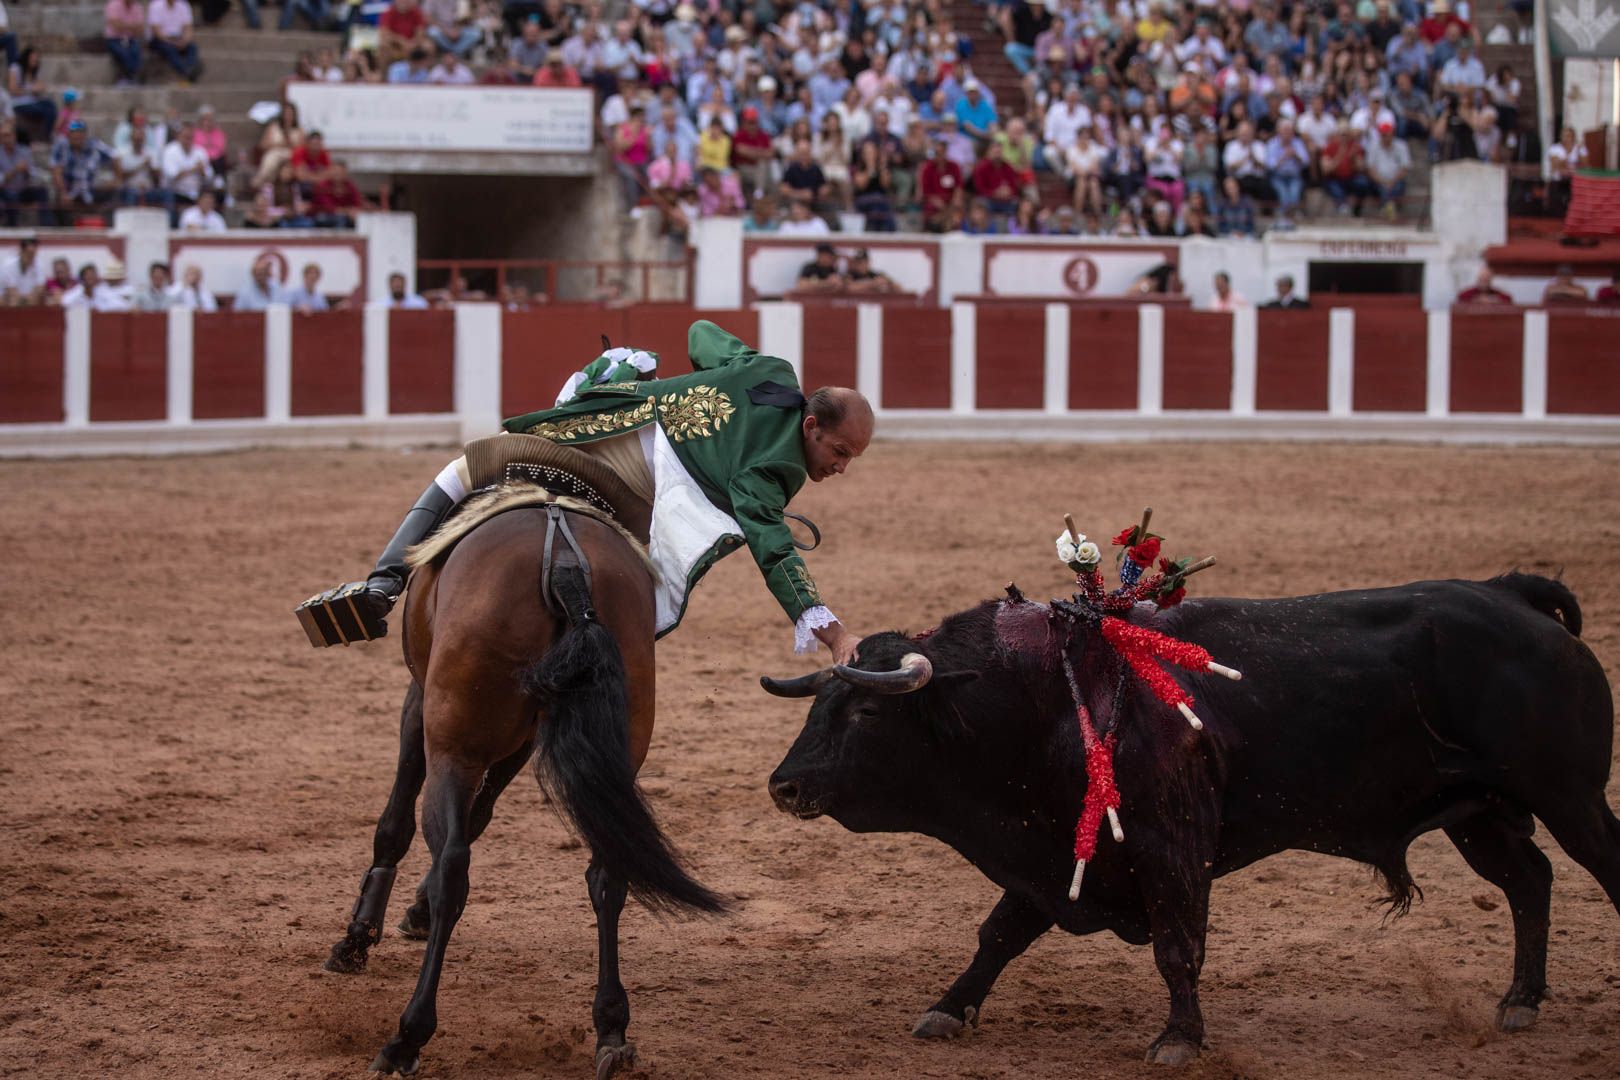 GALERÍA | La corrida de rejones de Zamora, en imágenes